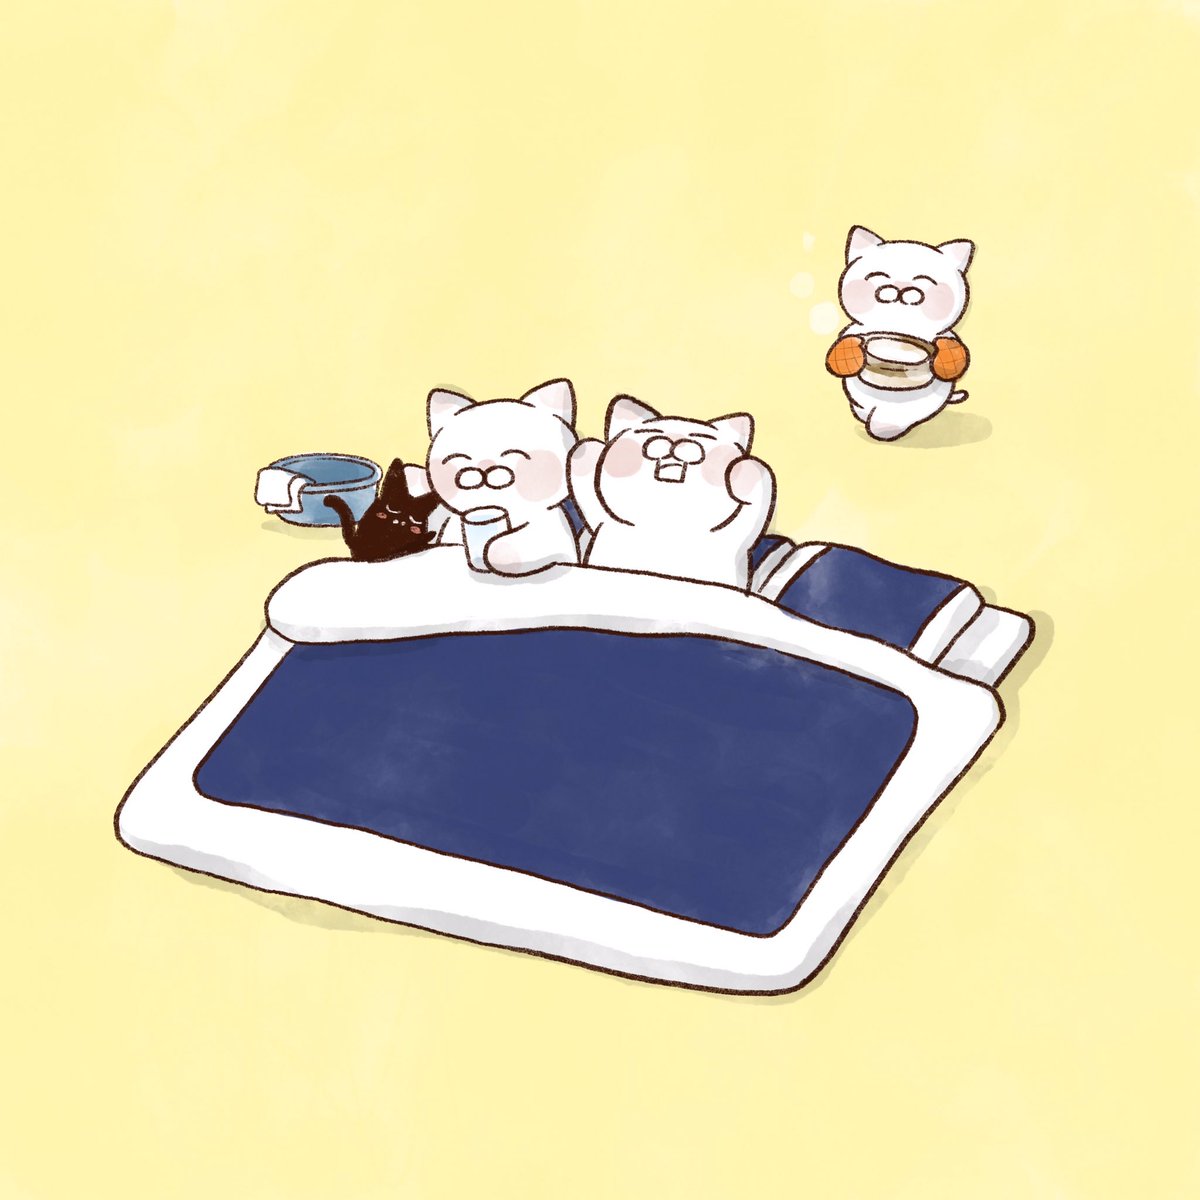 「(=^ェ^=)治った〜😷 」|大和猫のイラスト